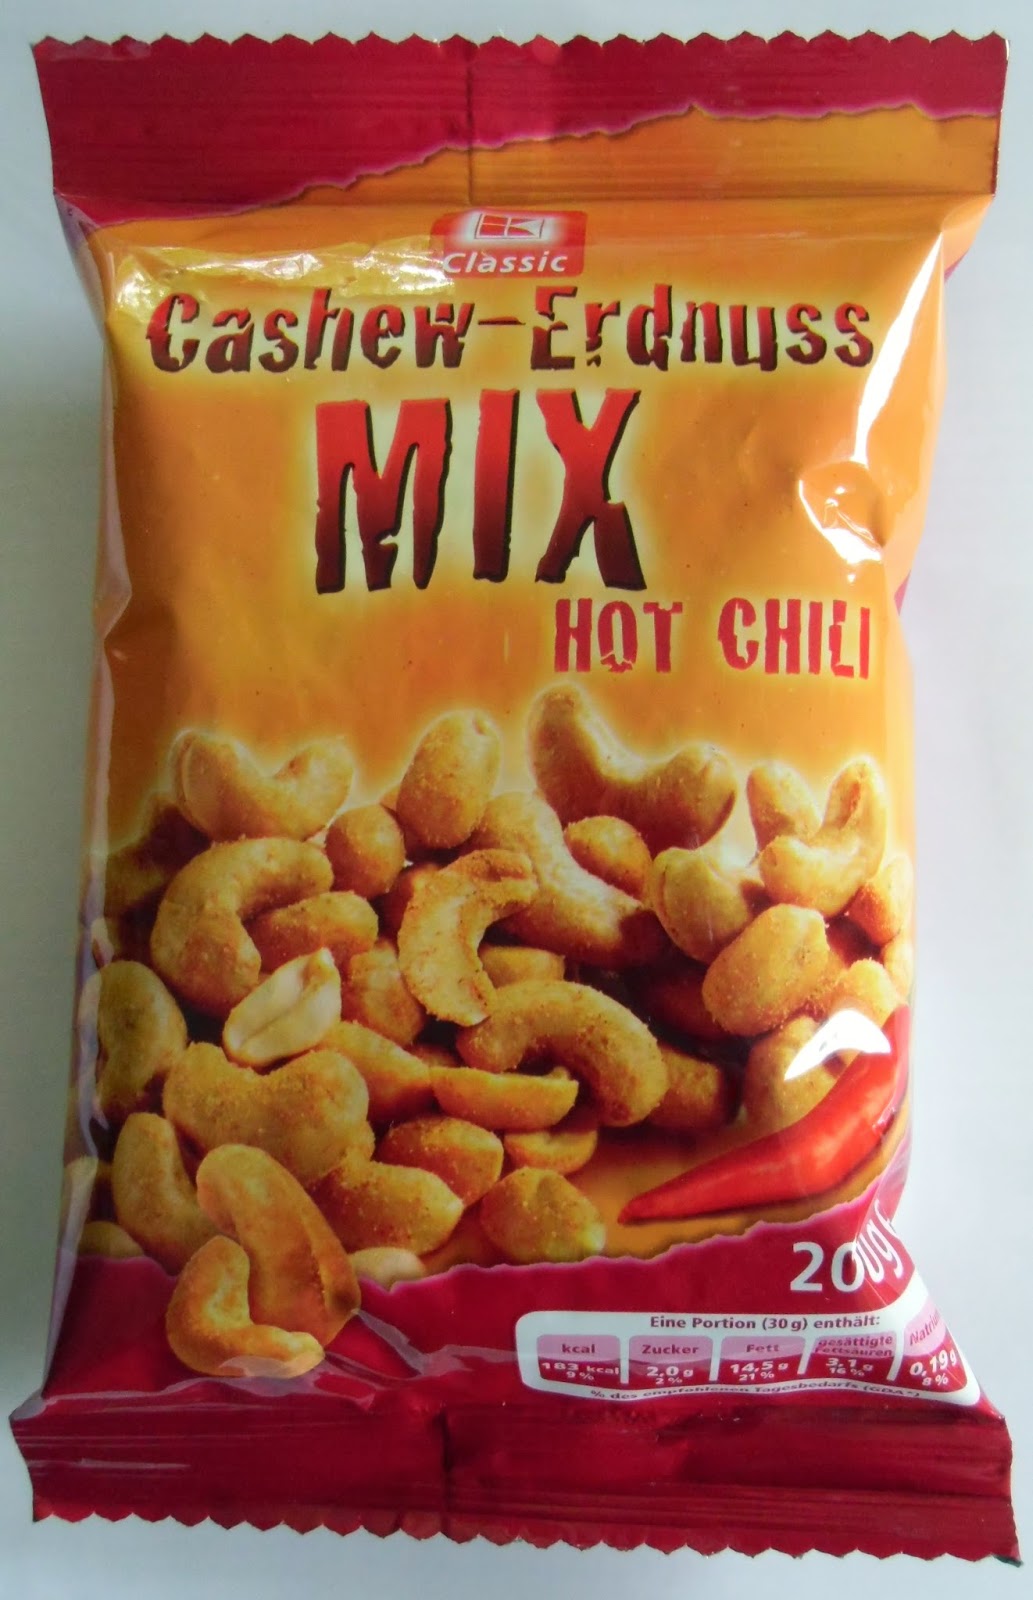 Chilihead77.de: Kaufland - K-Classic Cashew-Erdnuss Mix Hot Chili